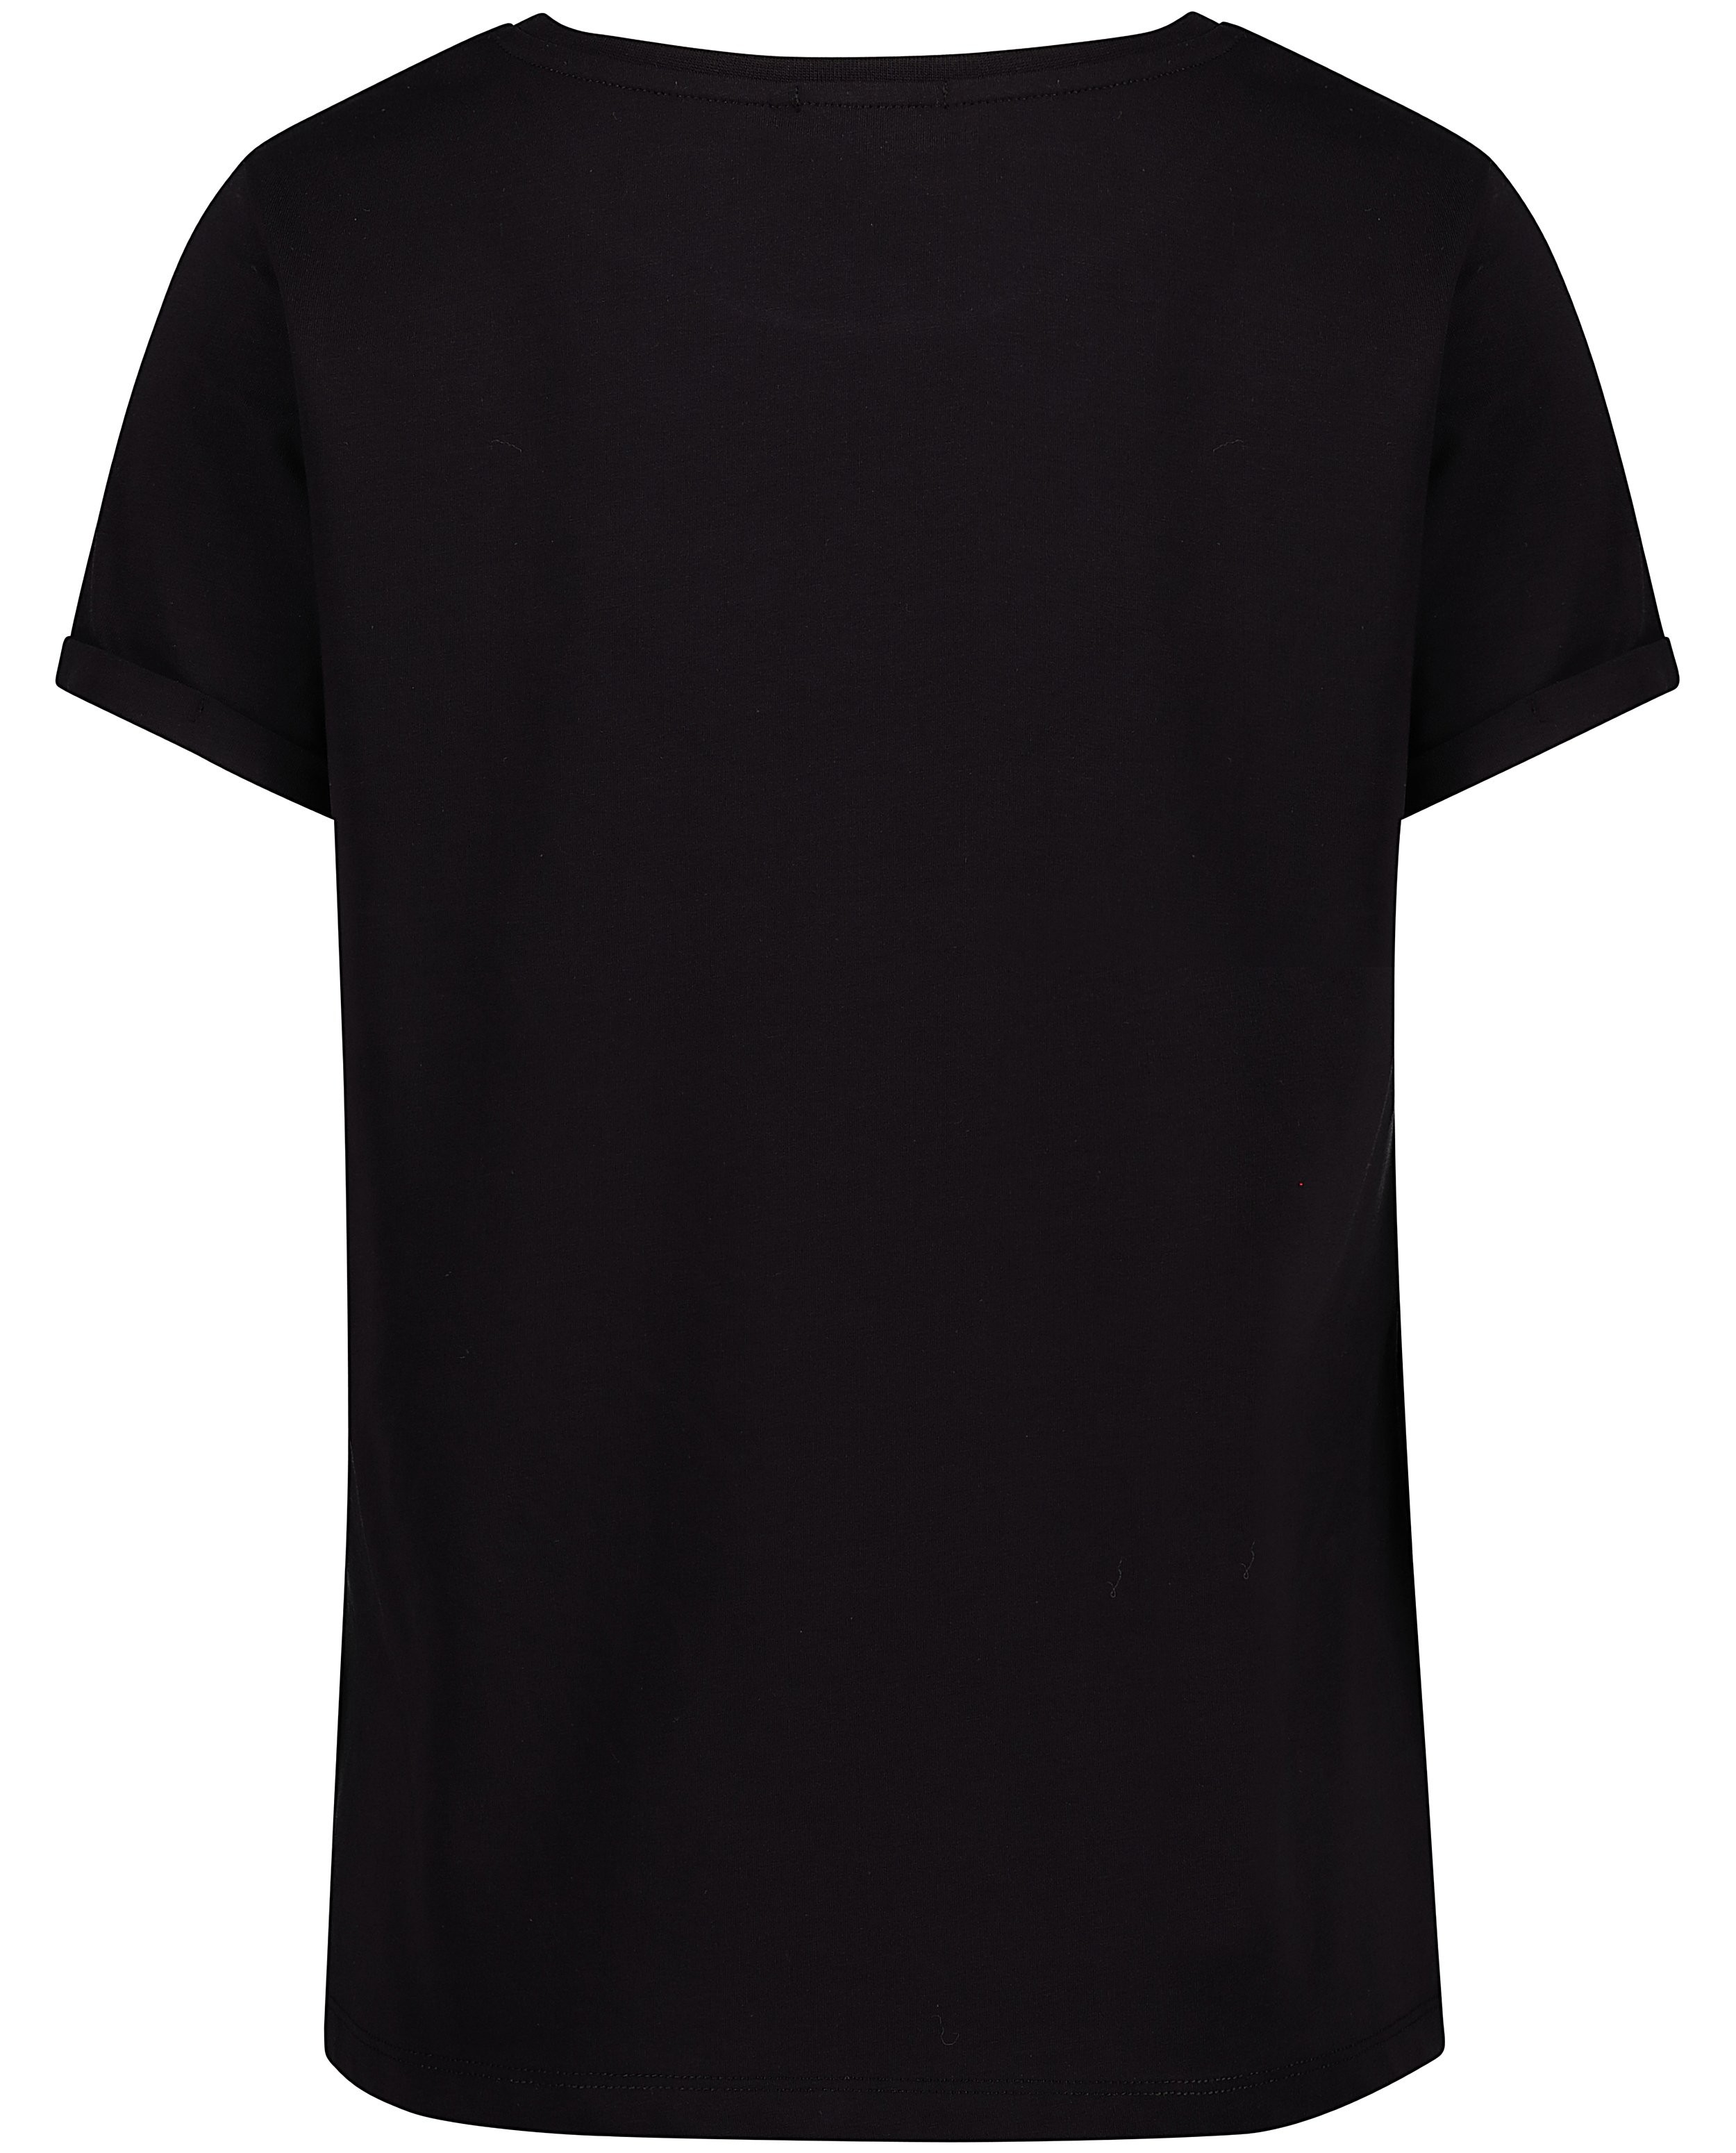 T-shirts - T-shirt swipe noir